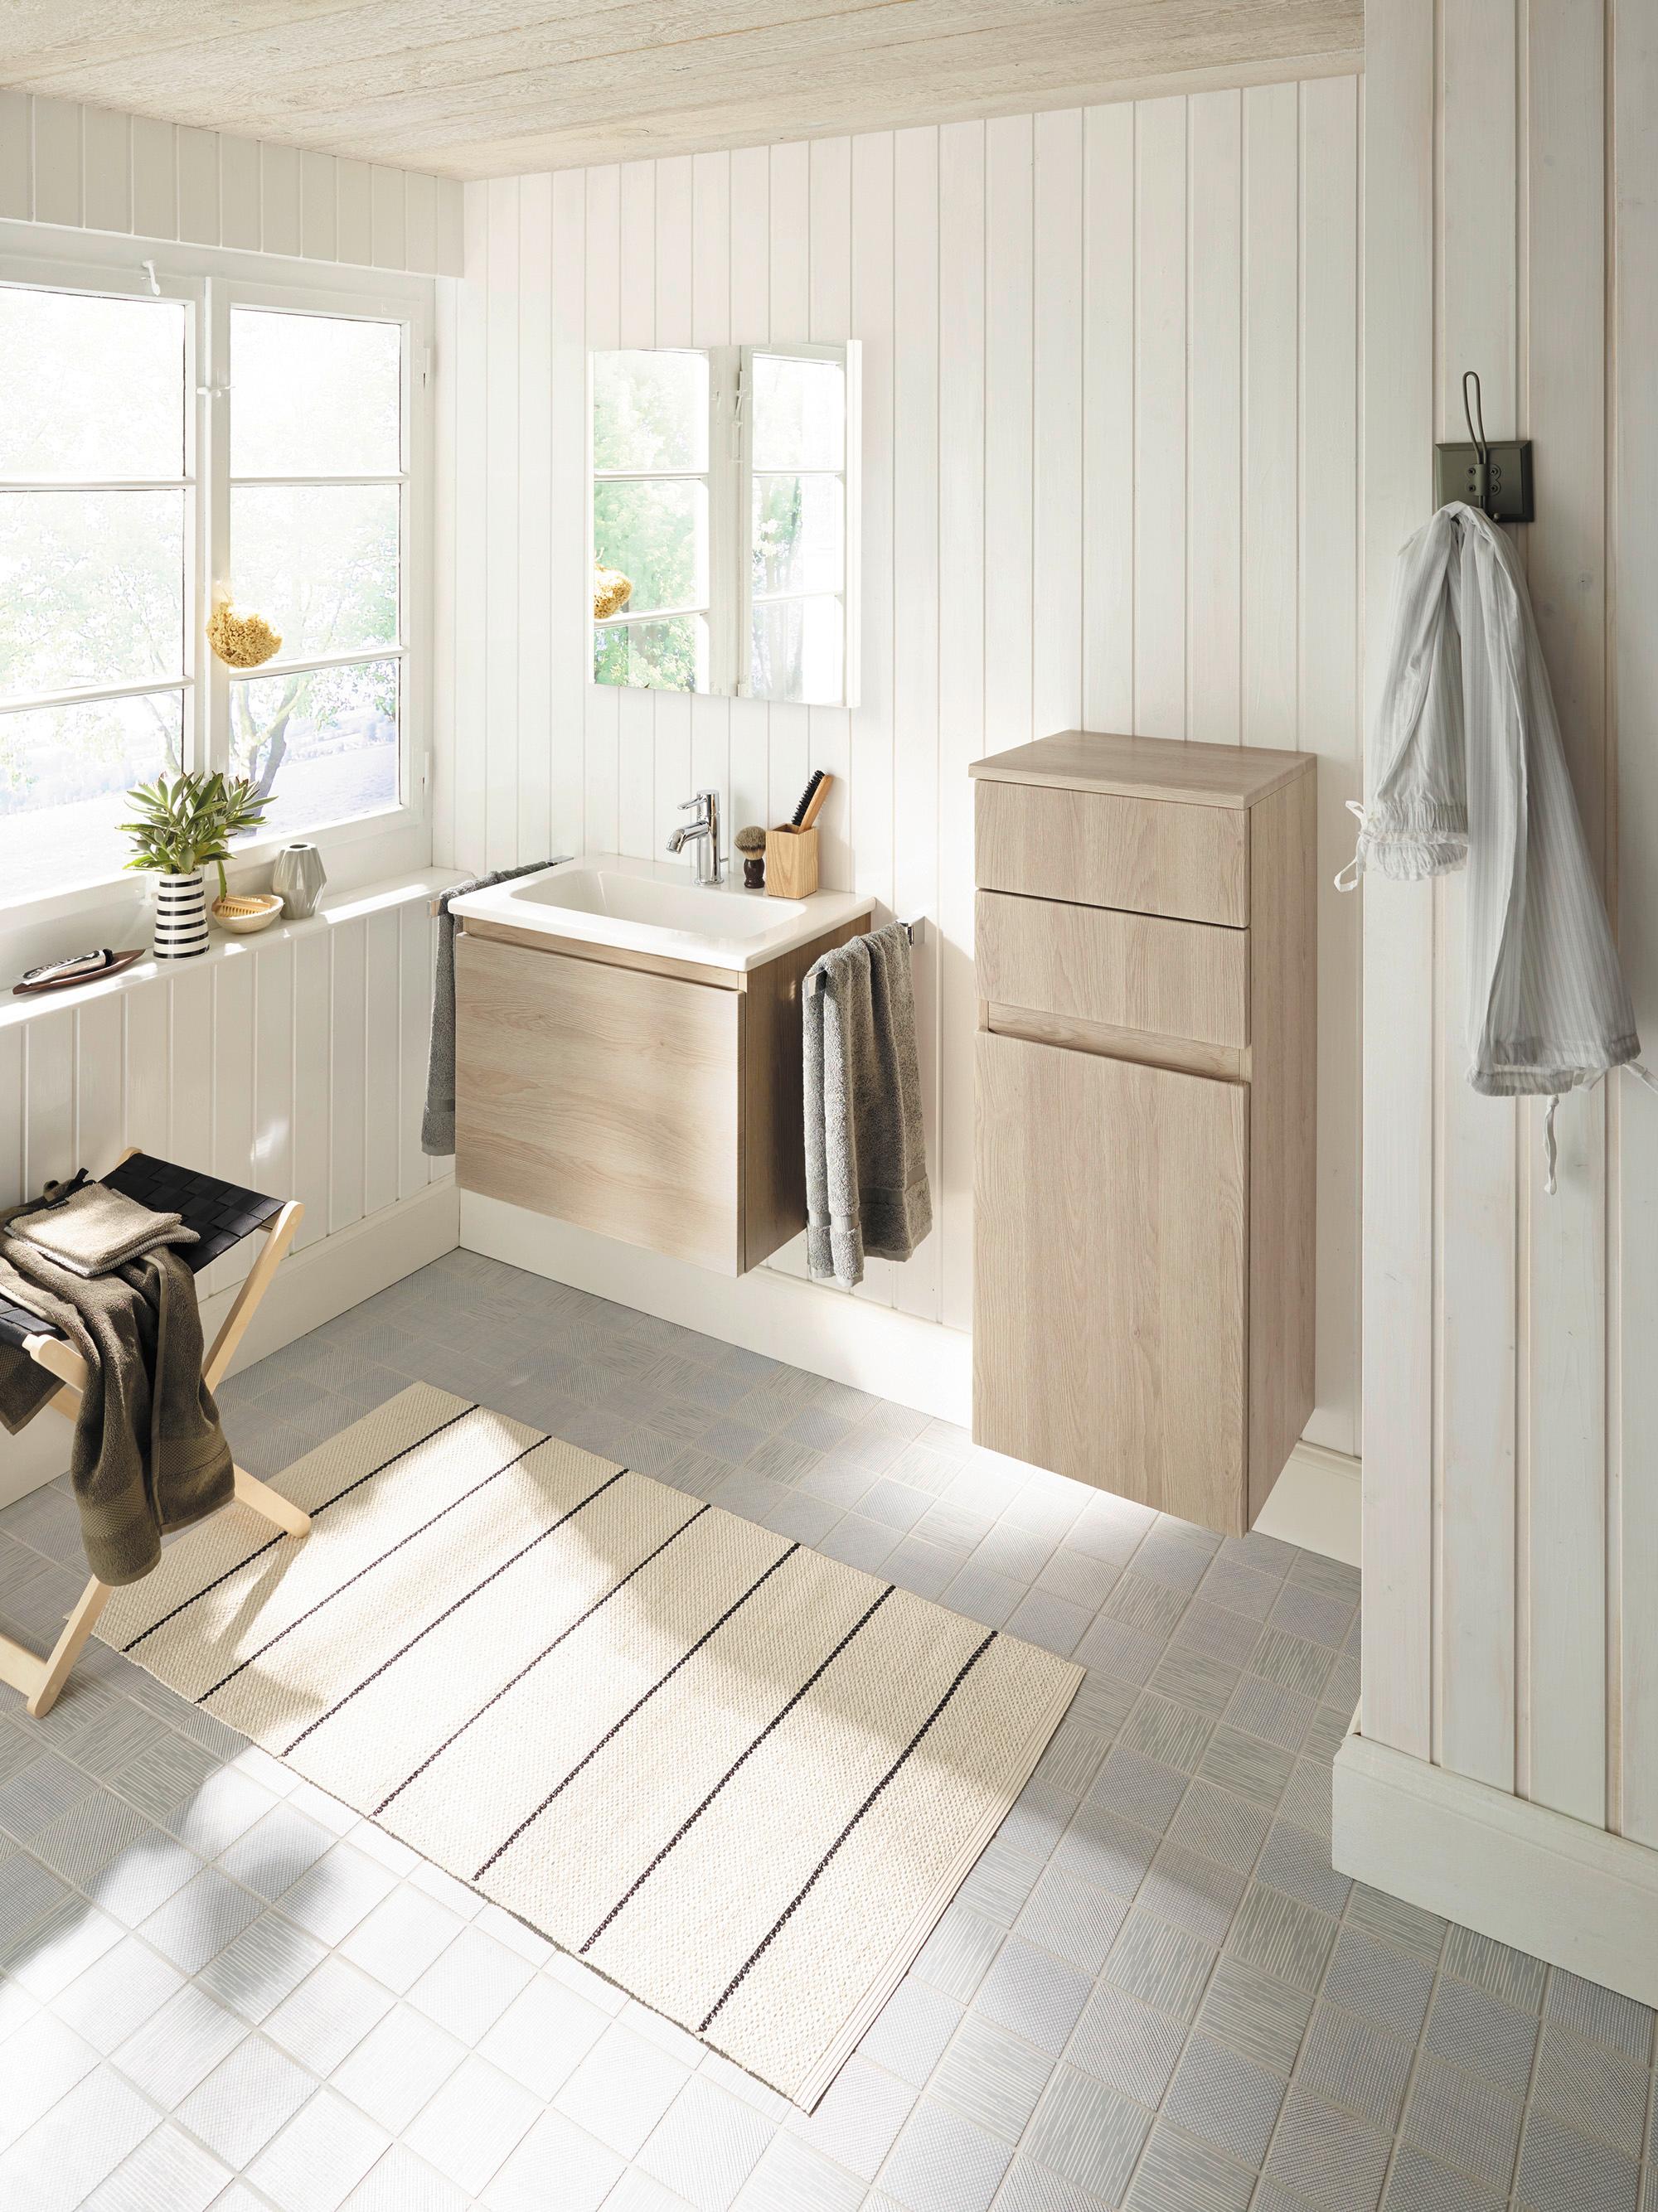 burgbad Bel kleines Badezimmer mit Möbeln in Holzdekor #bad #badezimmer #spiegel #waschtisch #waschbecken #modernesbadezimmer #badsanierung ©nexus product design